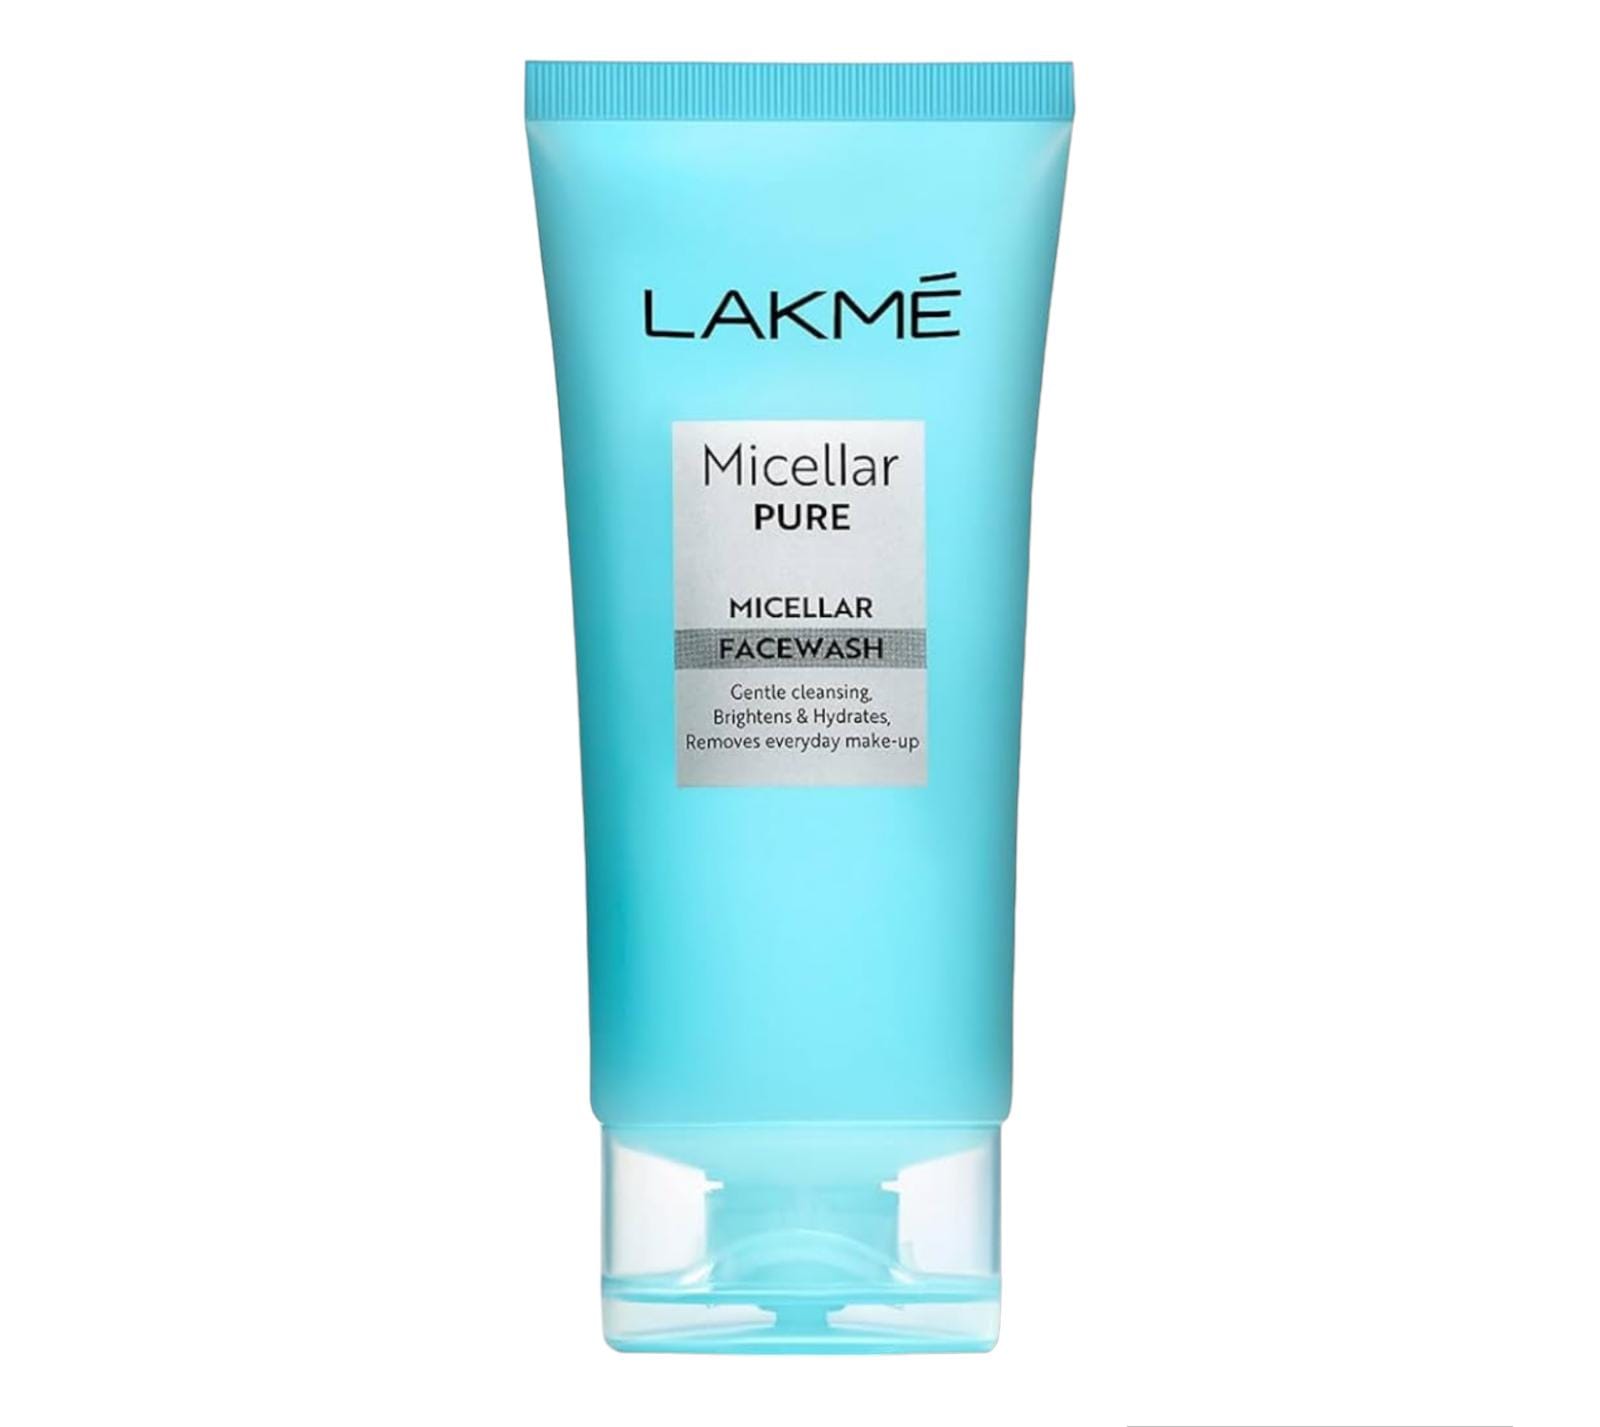 Lakme Micellar Face wash